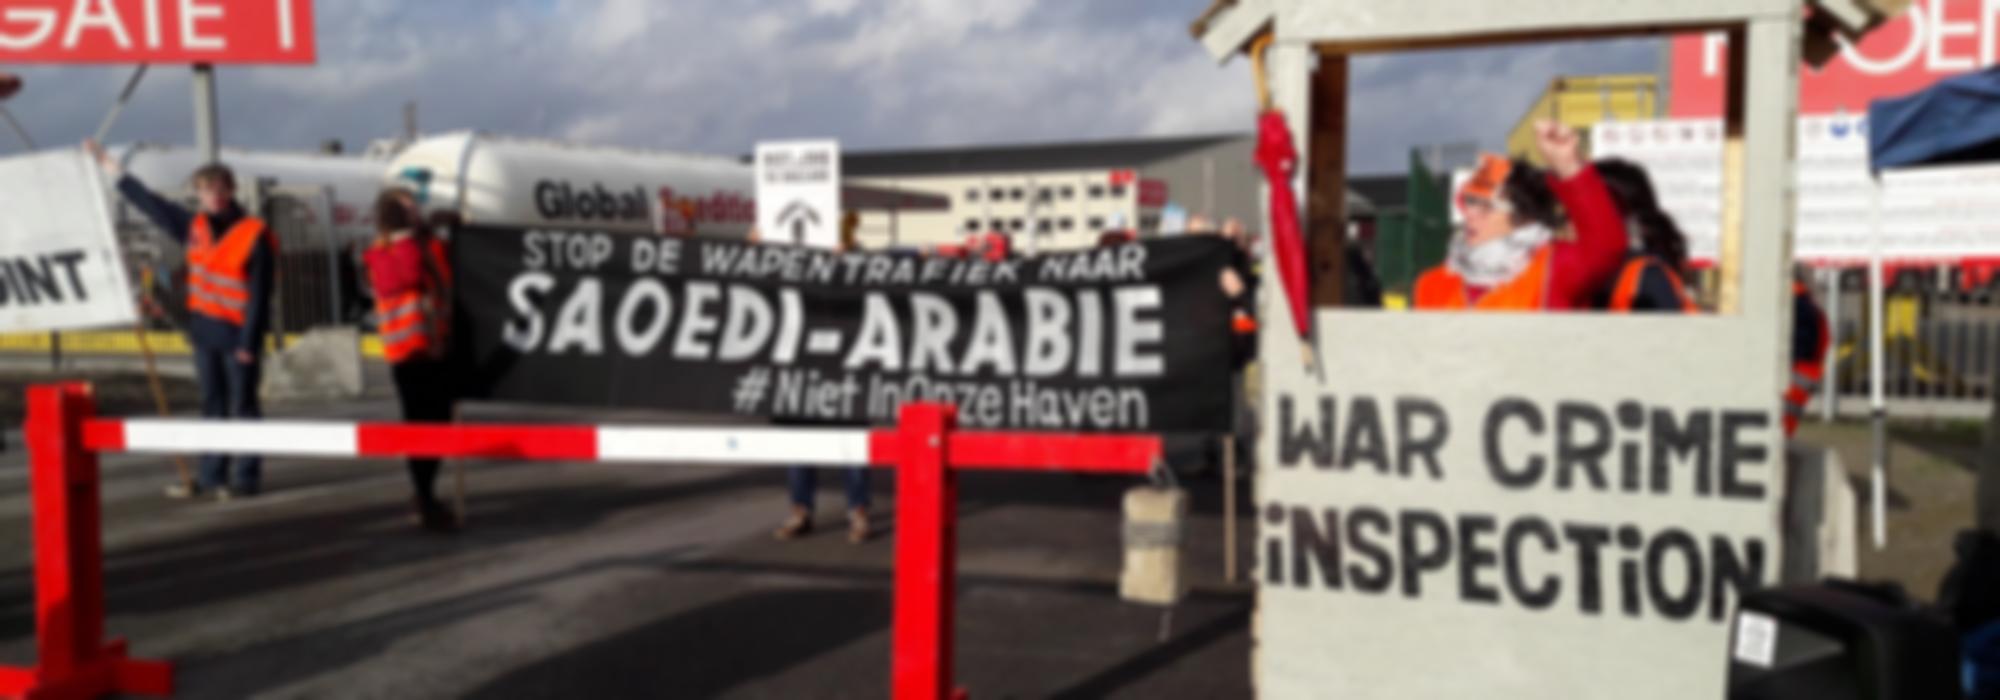 foto actie Antwerpse Haven met banner Stop de wapentrafiek naar Saudi-Arabië